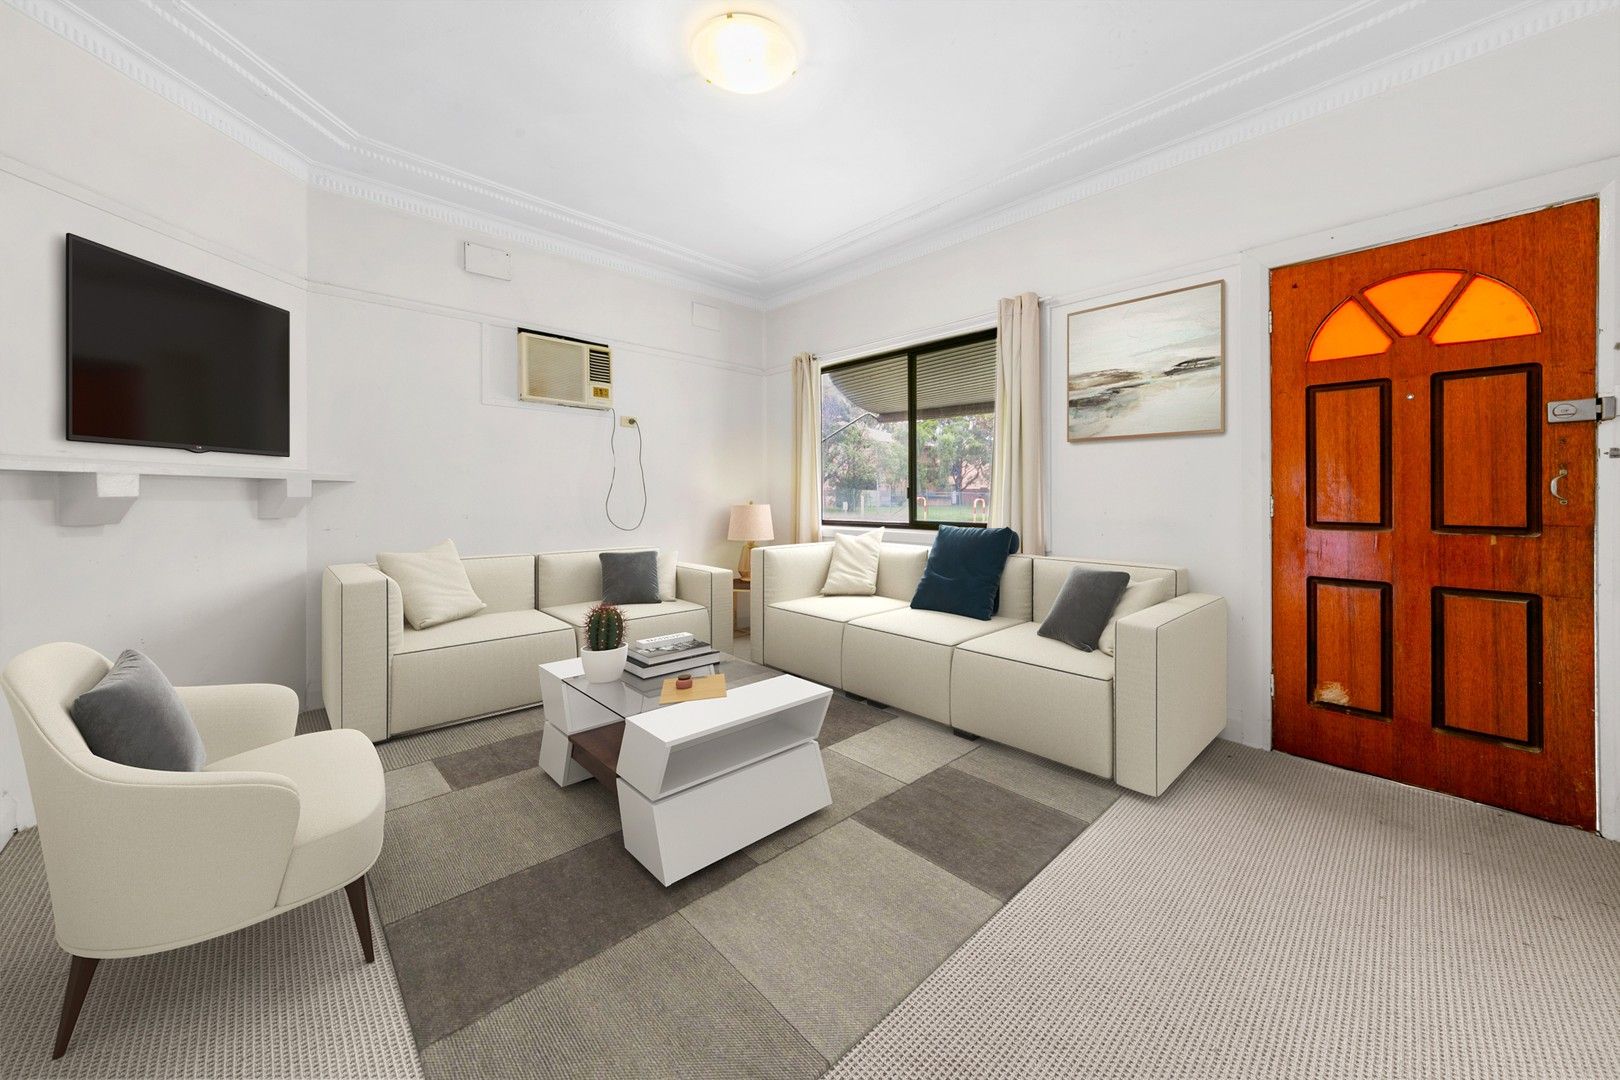 2 bedrooms House in 24 Windsor Rd MERRYLANDS NSW, 2160